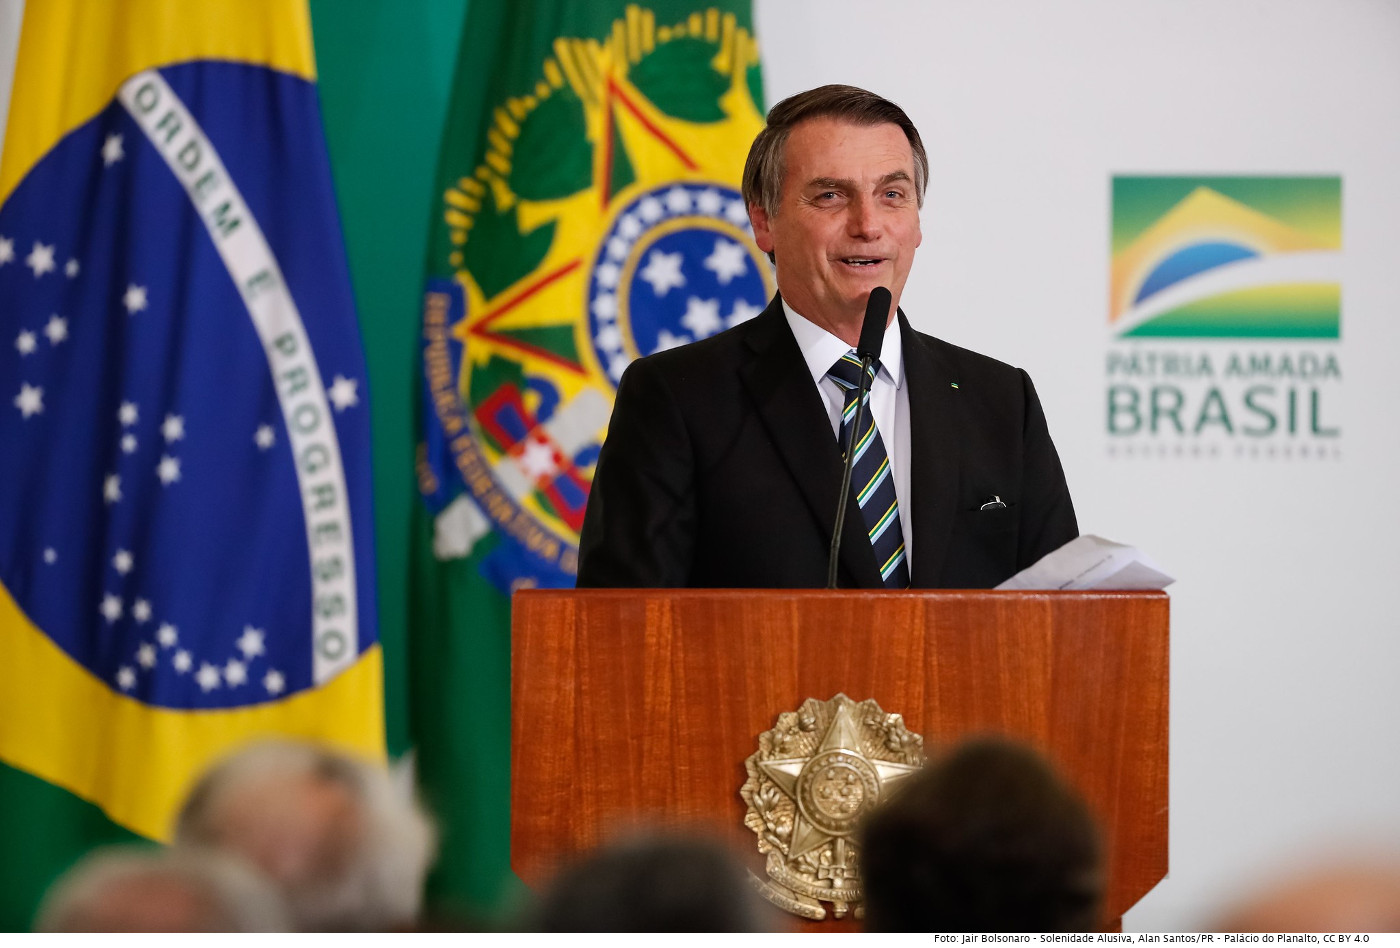 Brasiliens Präsident Jair Bolsonaro arbeitet mit falschen Behauptungen, um die Gunst der Wähler zu erhalten. Foto (2019): 18/07/2019 Solenidade Alusiva, Alan Santos/PR, Palácio do Planalto, CC BY 4.0